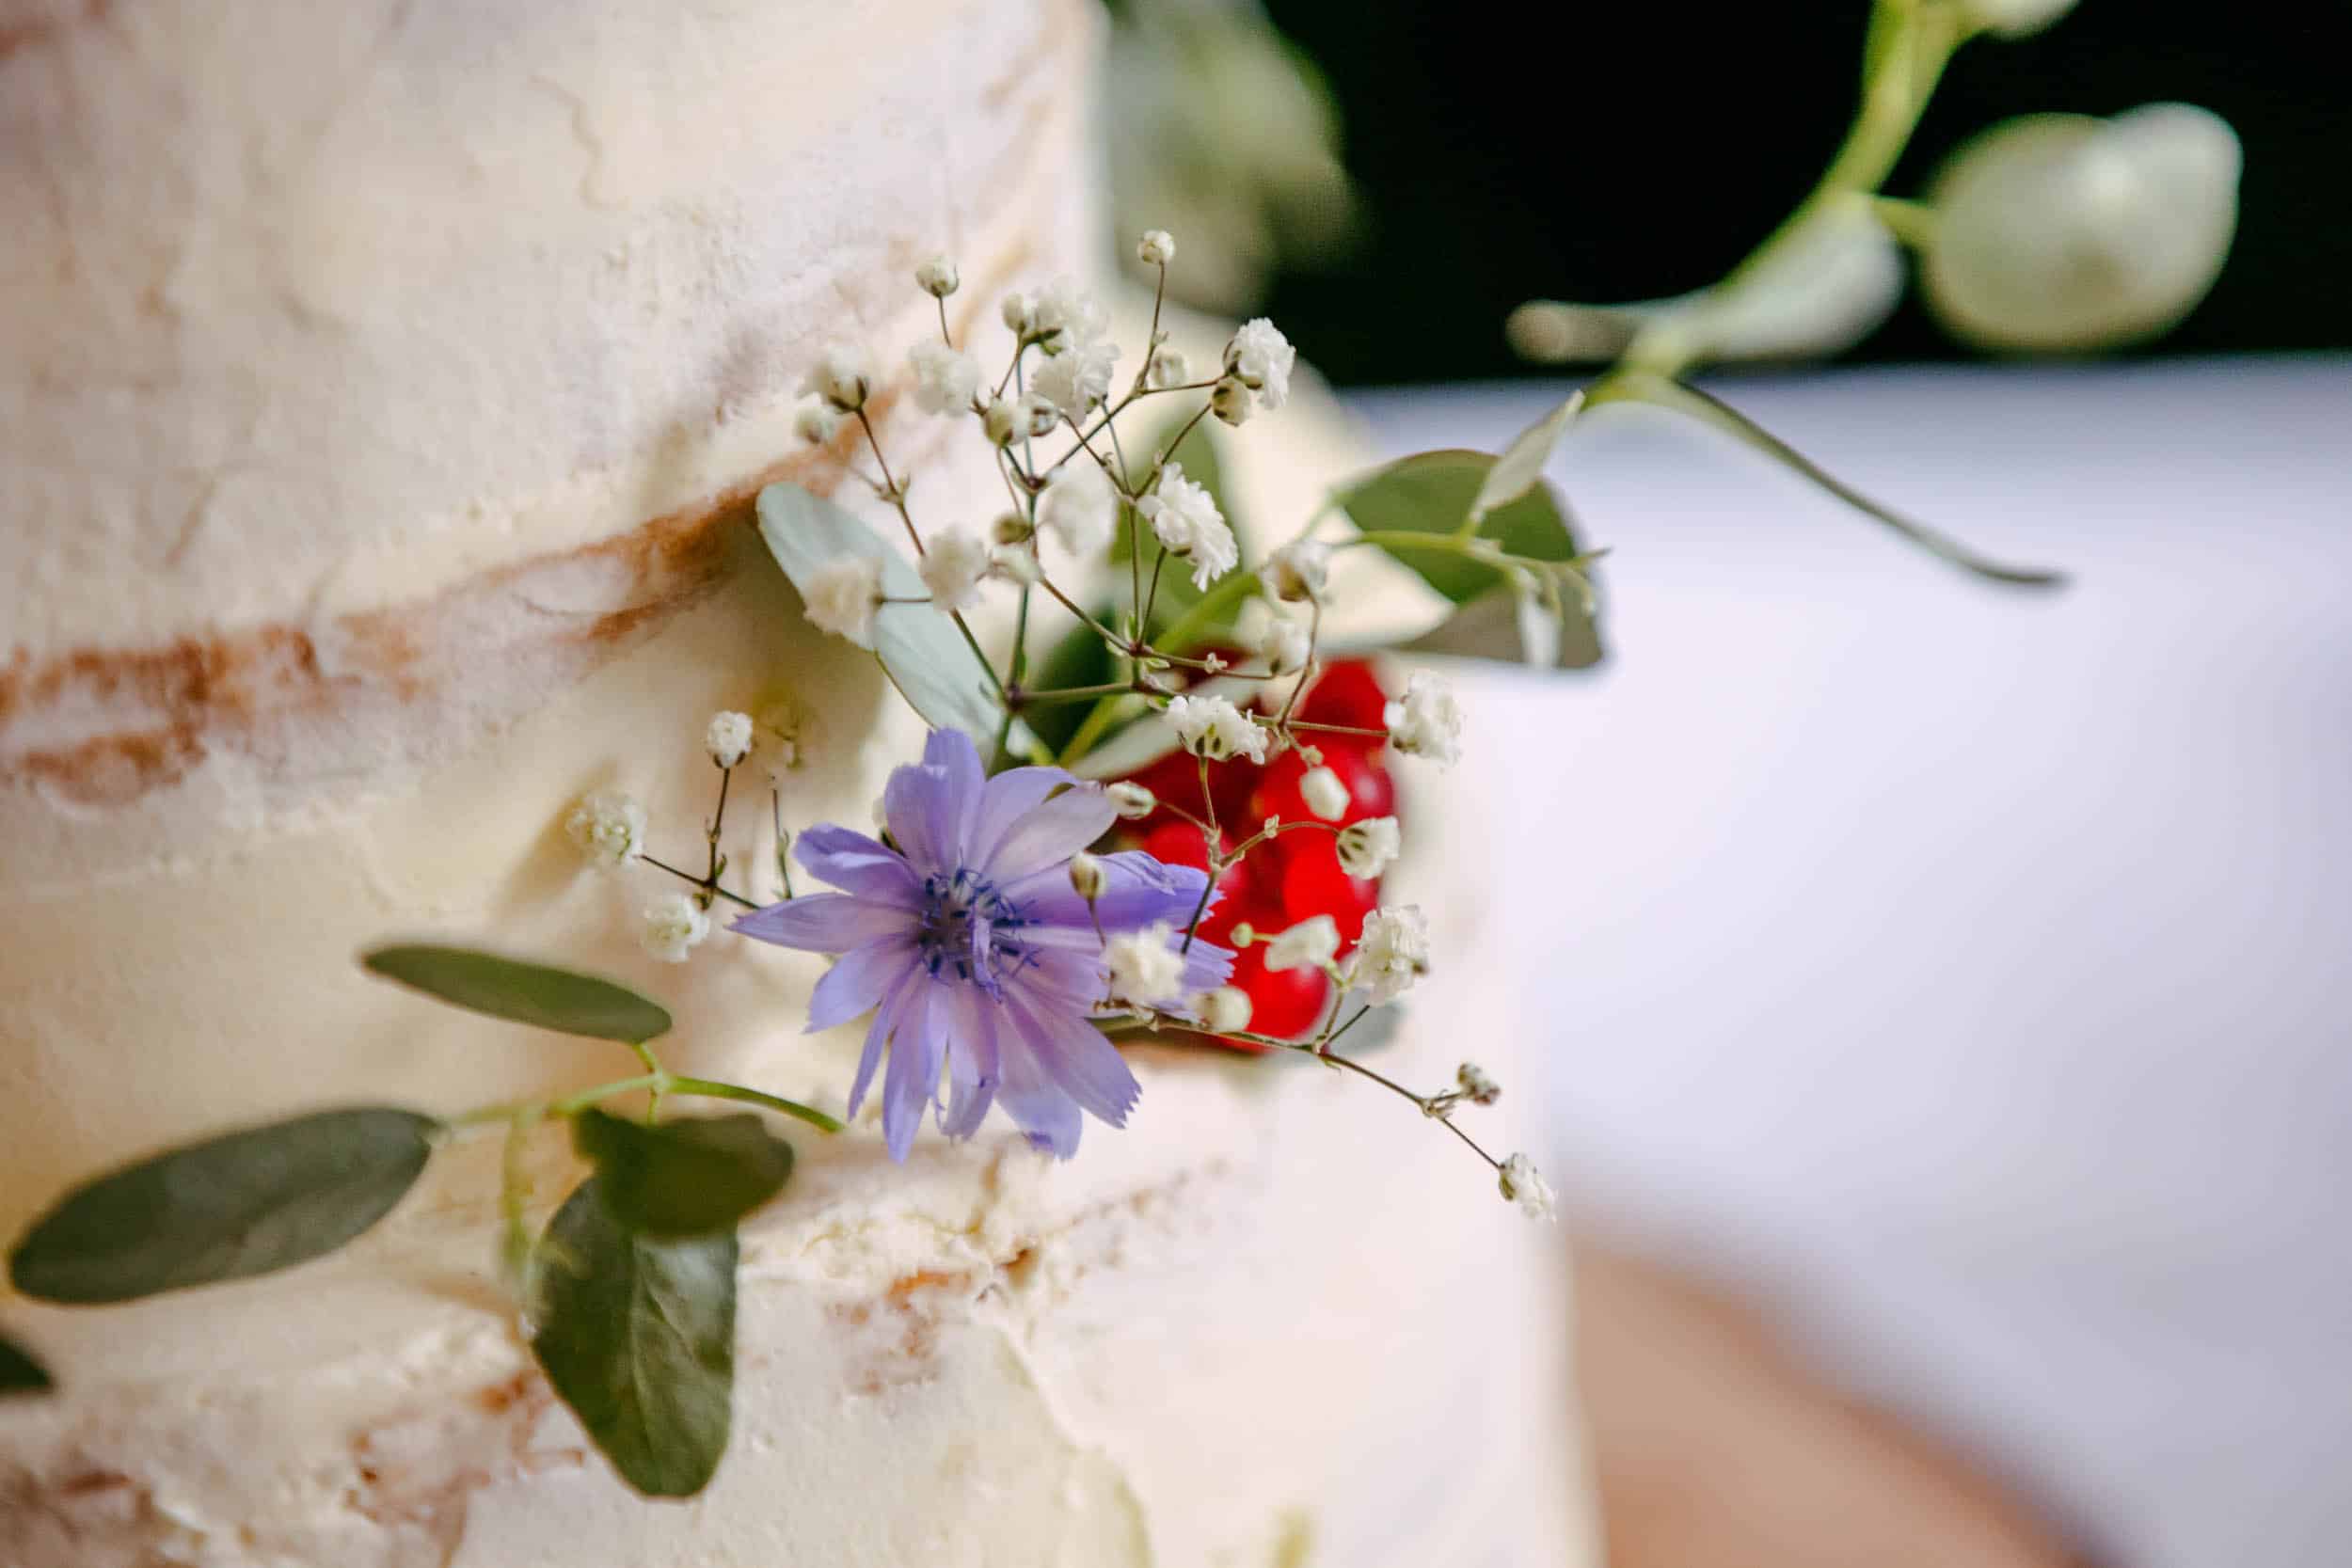 Een close-up van een bruidstaart met bloemen erop.